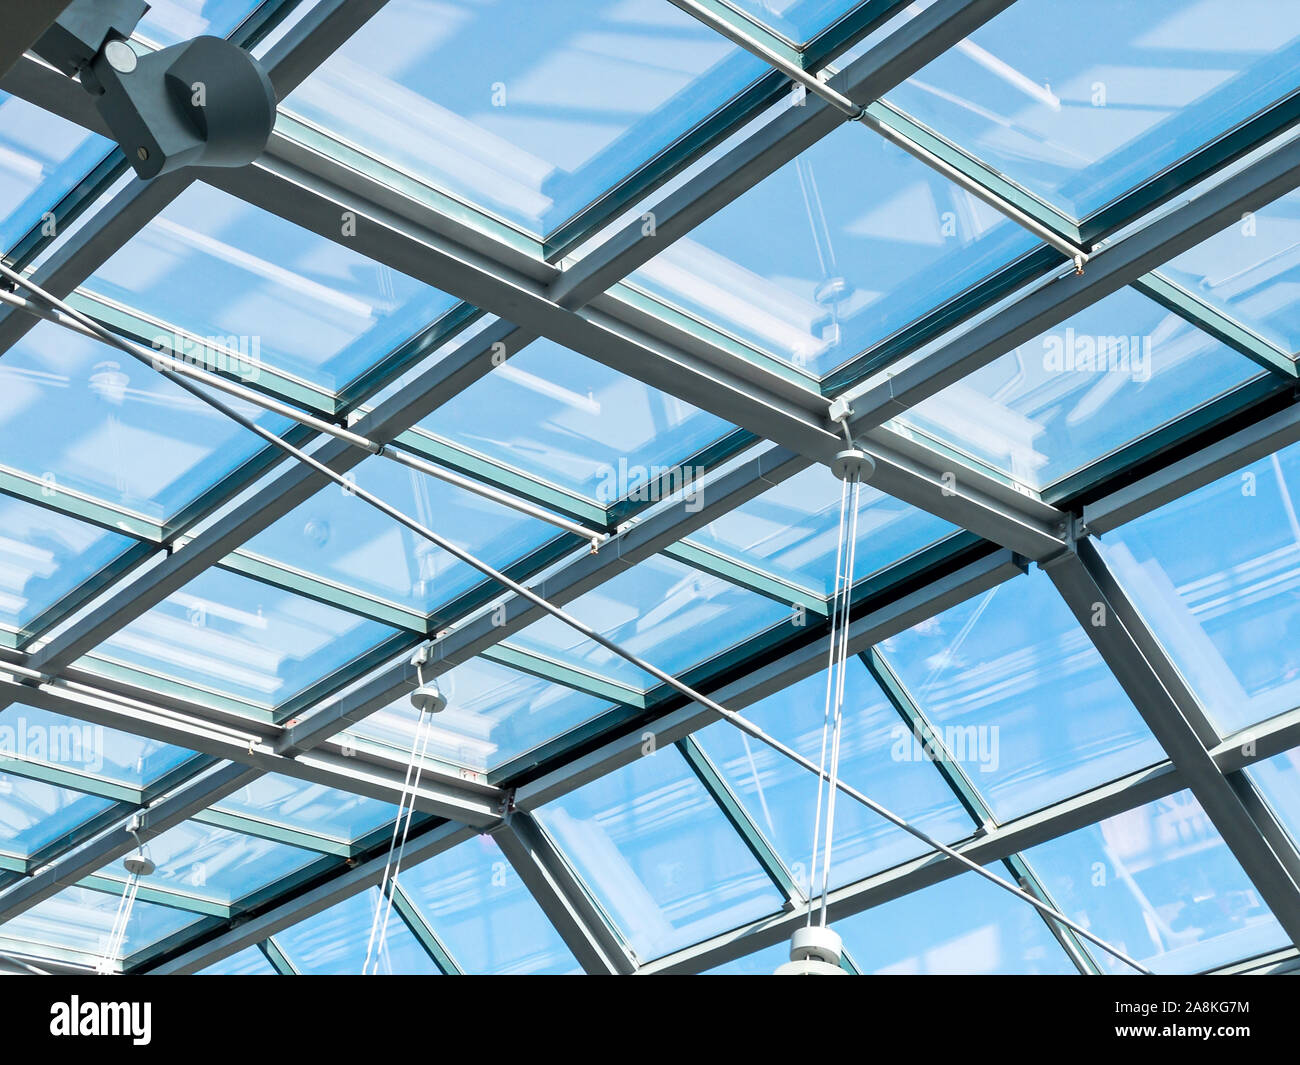 Libre vue de l'intérieur du toit en verre transparent moderne. bleu ciel à travers un plafond de verre Banque D'Images